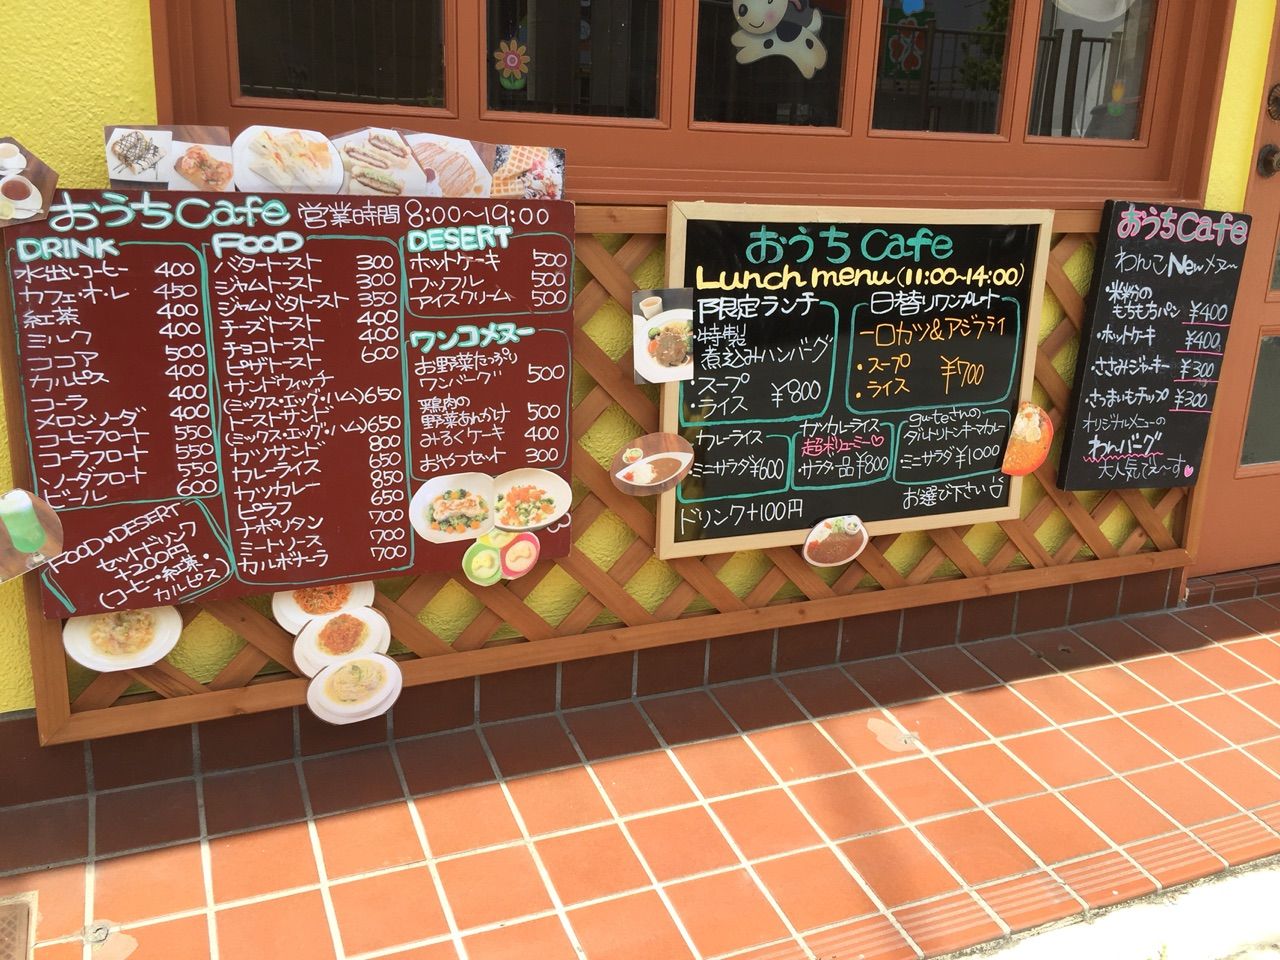 桜小橋の交差点からすぐ わんちゃんメニューも豊富なドッグカフェ おうちcafe桜小橋 っていうお店がオープンしてる 城東じゃーなる